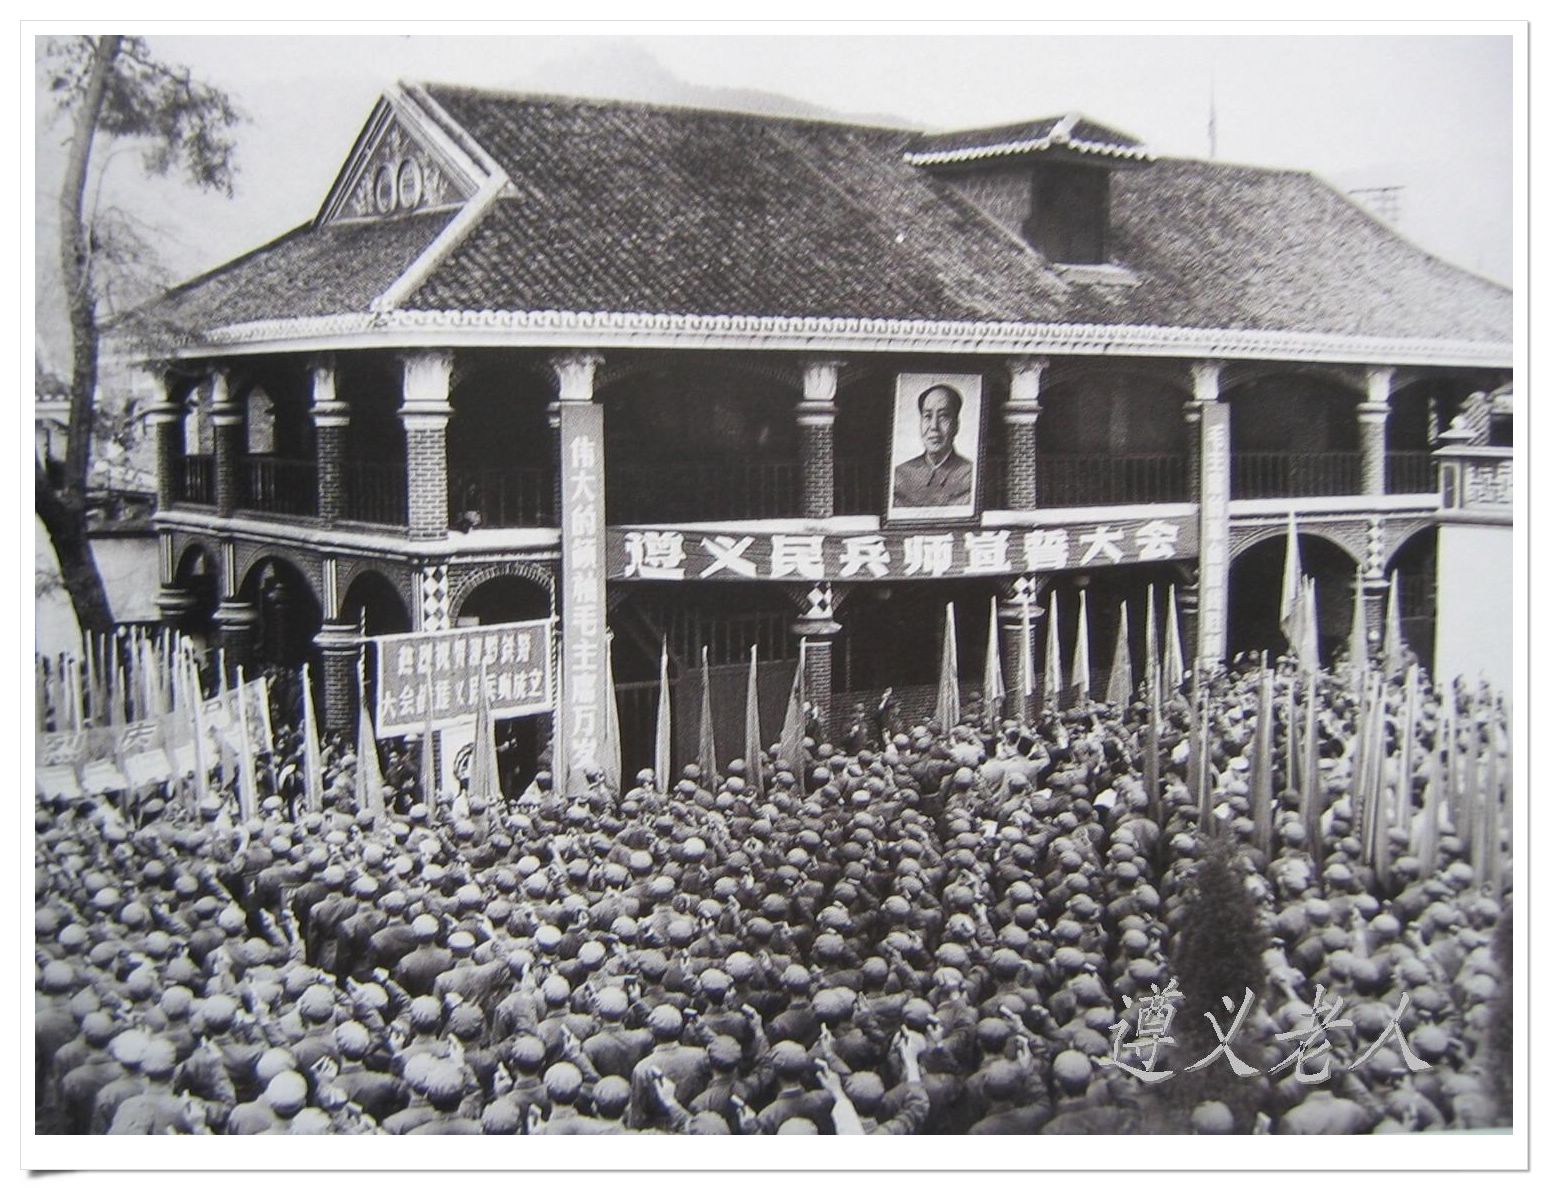 第二站 黔 :     81年前,贵州遵义的一栋小楼里举行了一次会议,这场